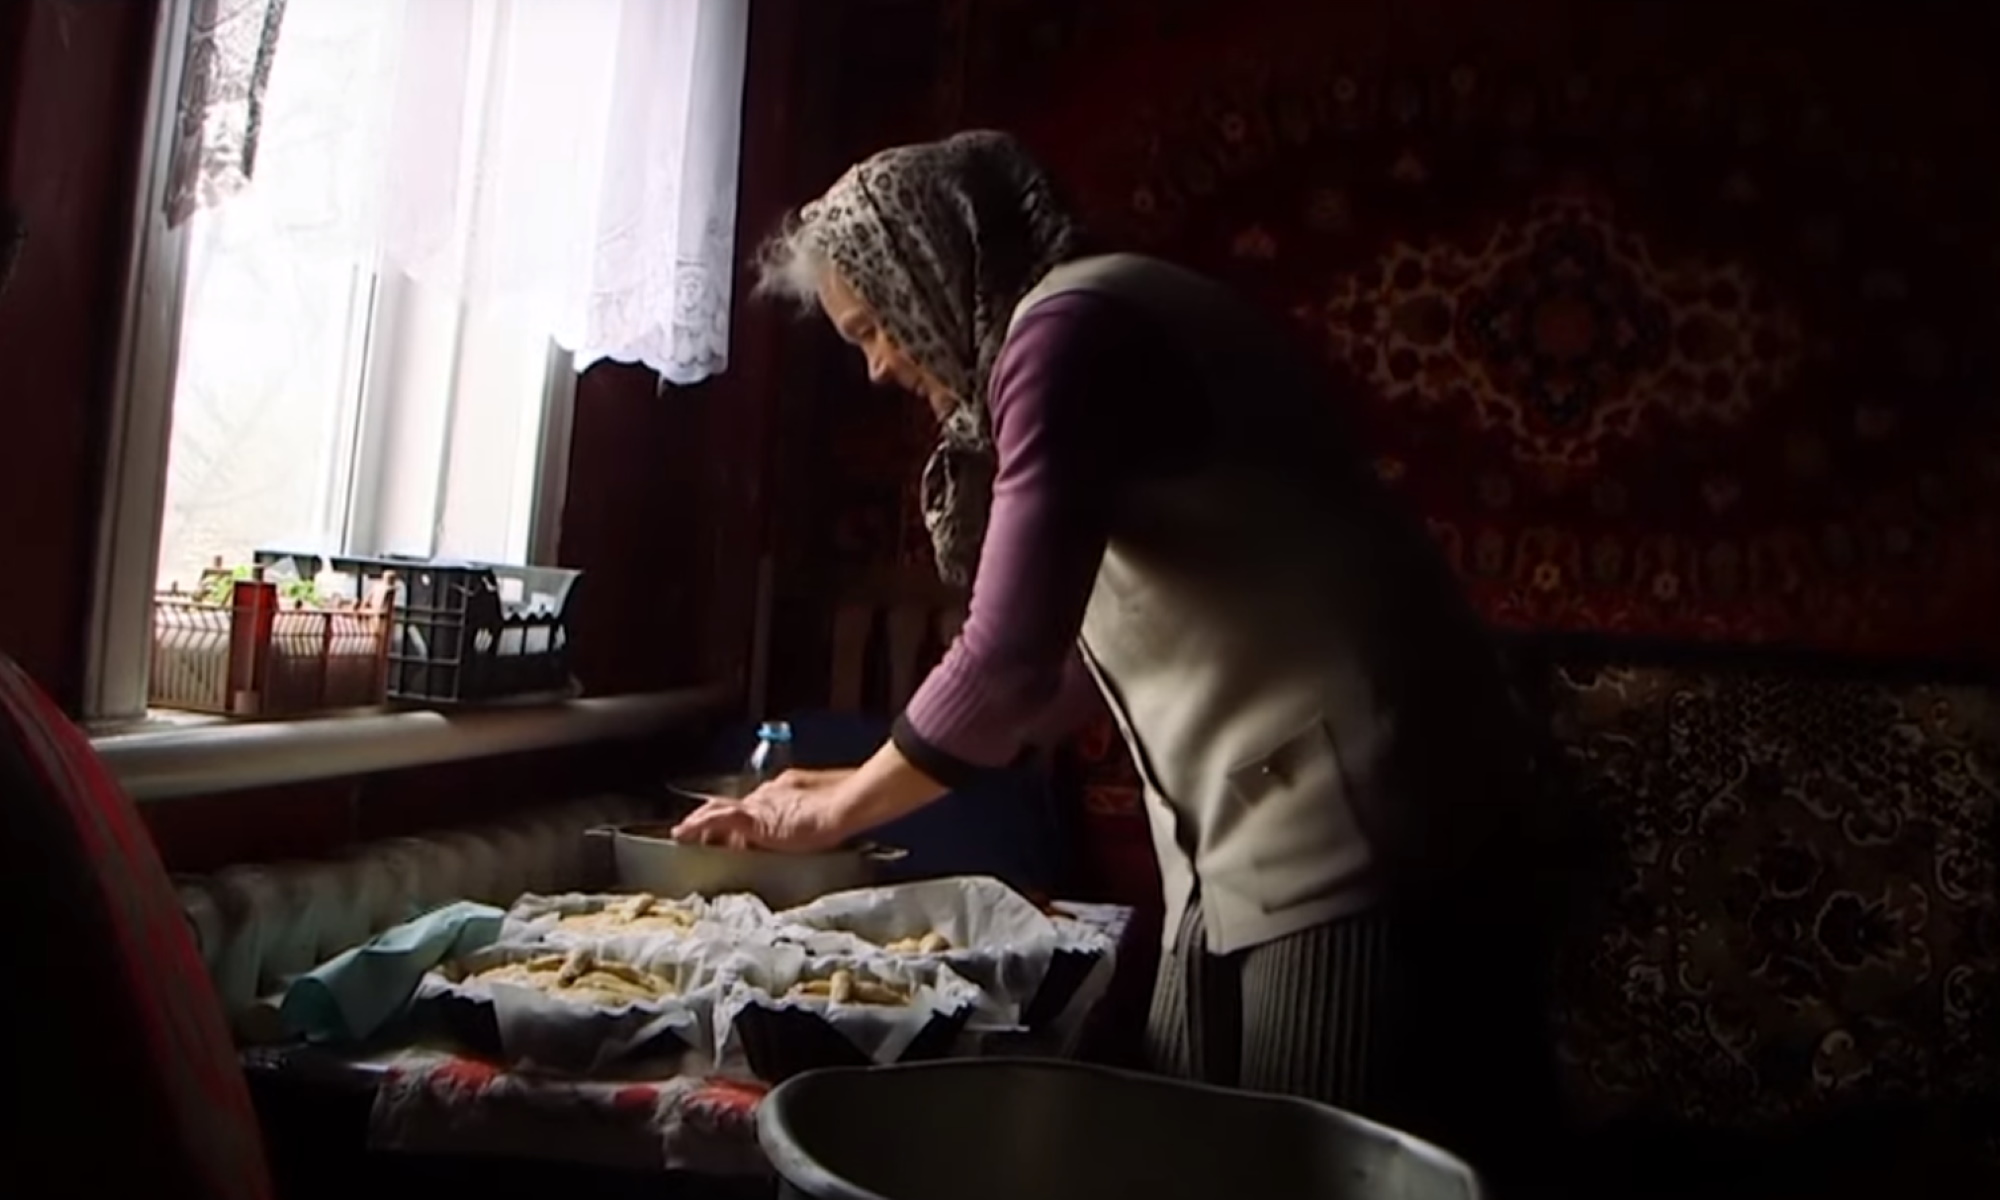 Ουκρανία: Γιαγιά ψήνει πασχαλινό ψωμί ανάμεσα στα χαλάσματα του πολέμου